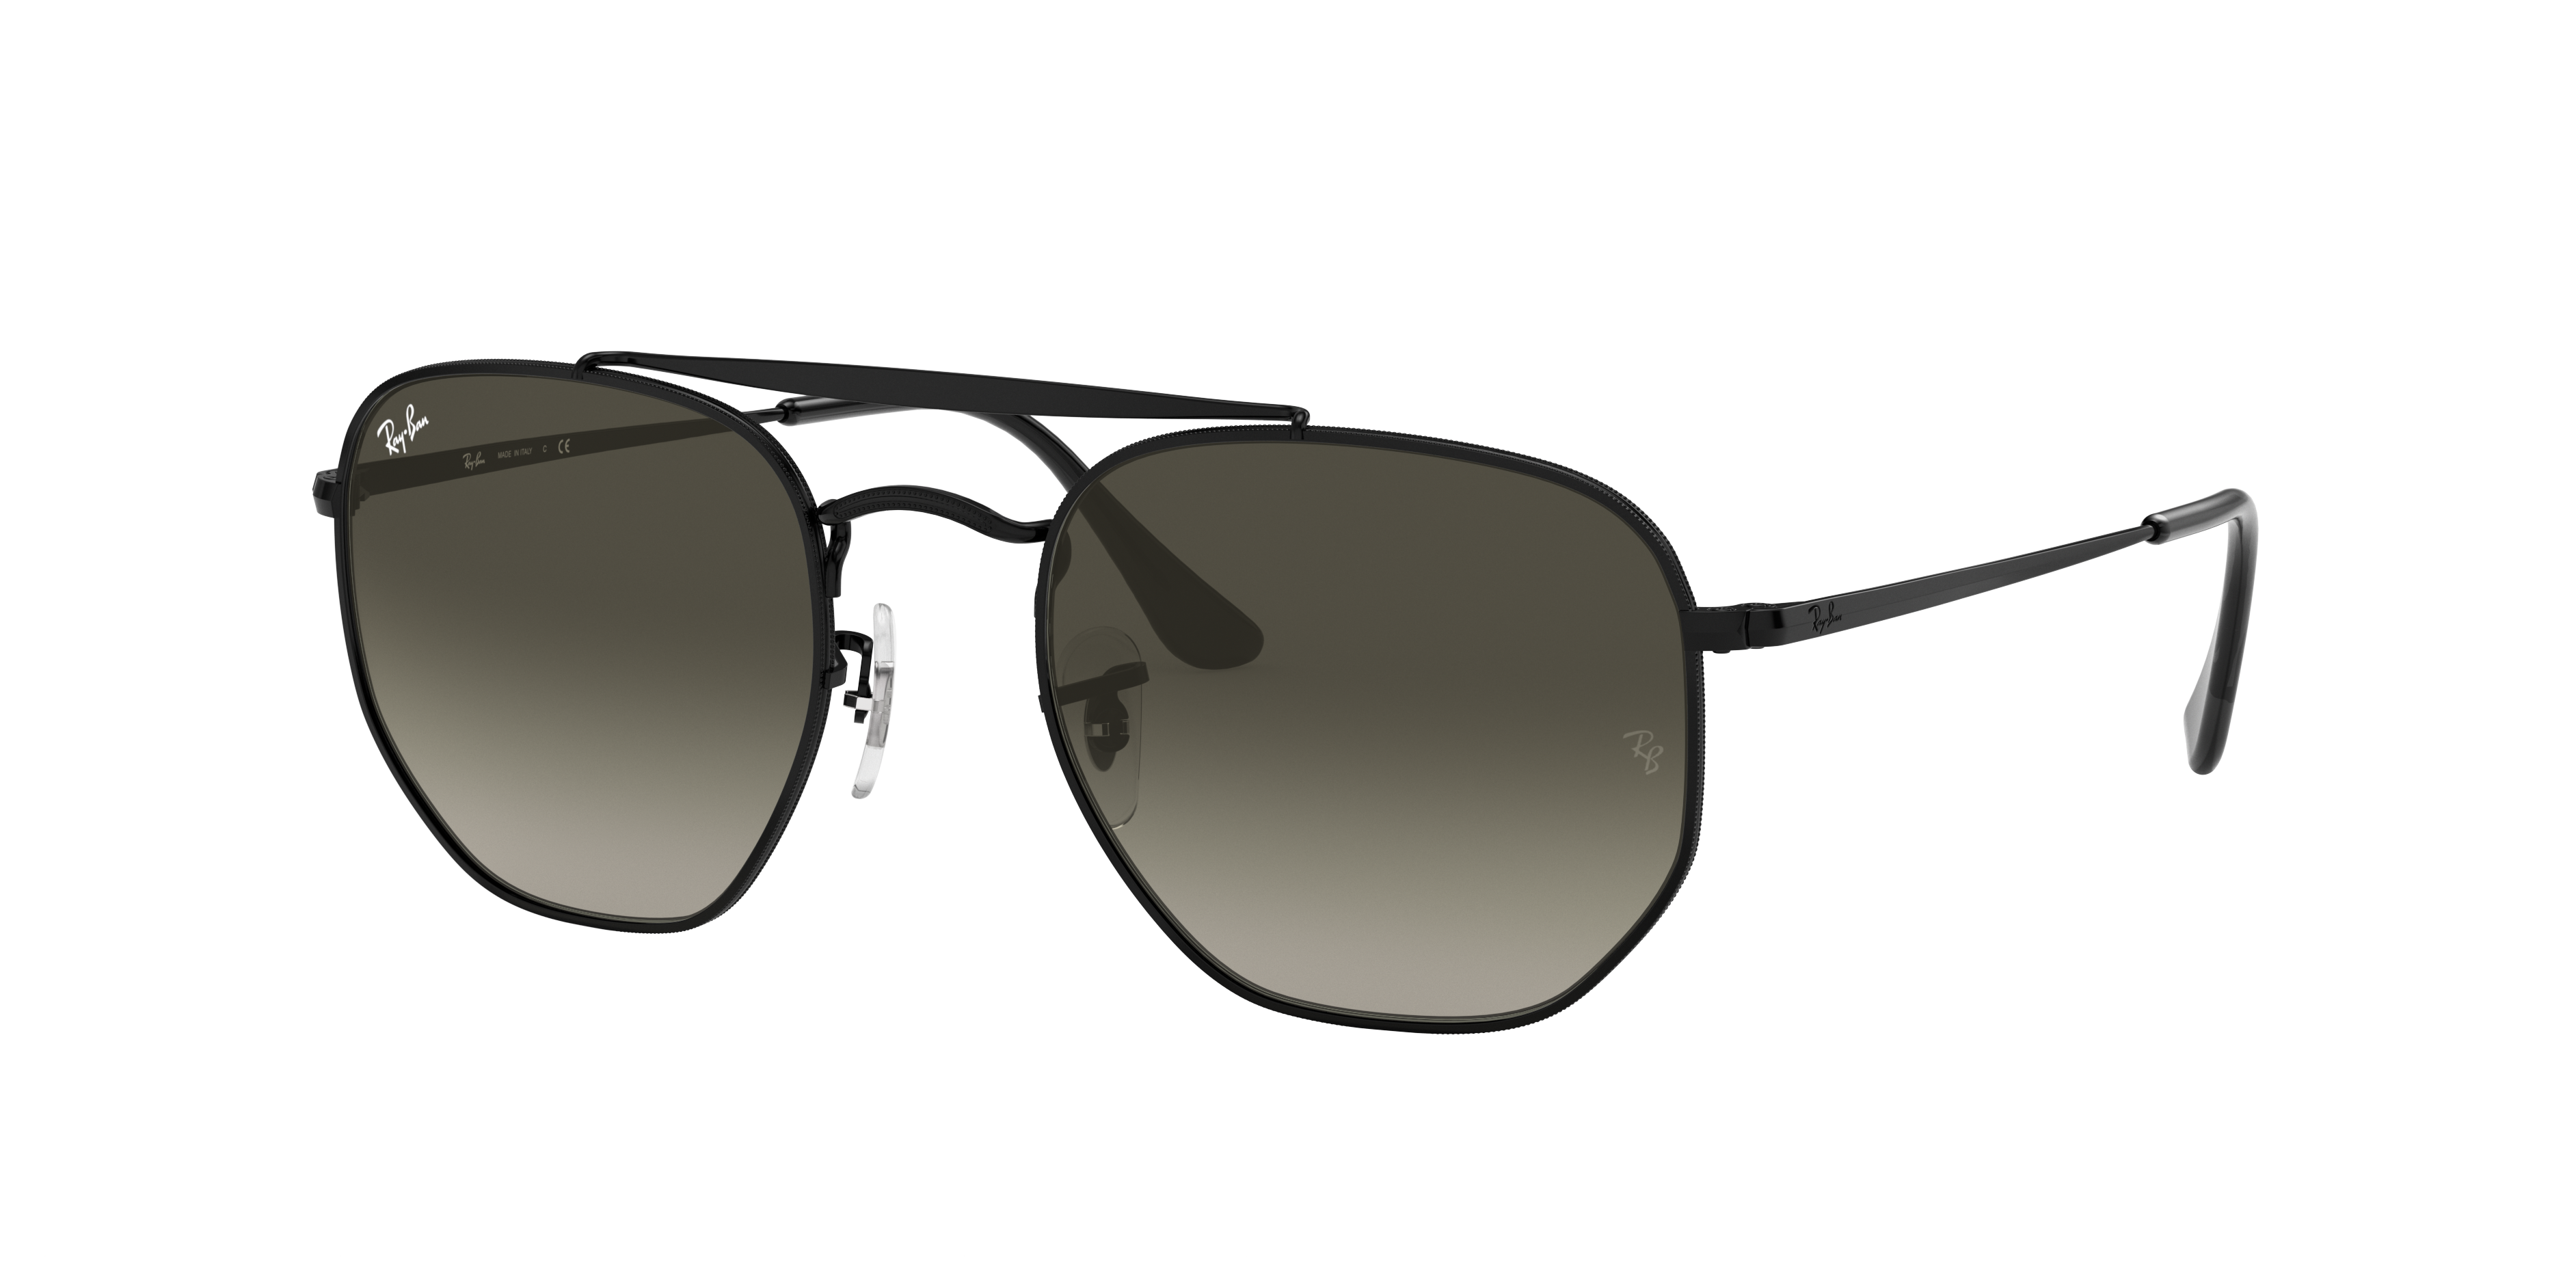 CORRIGAN BIO-BASED Sunglasses in Transparent Brown and Dark Green